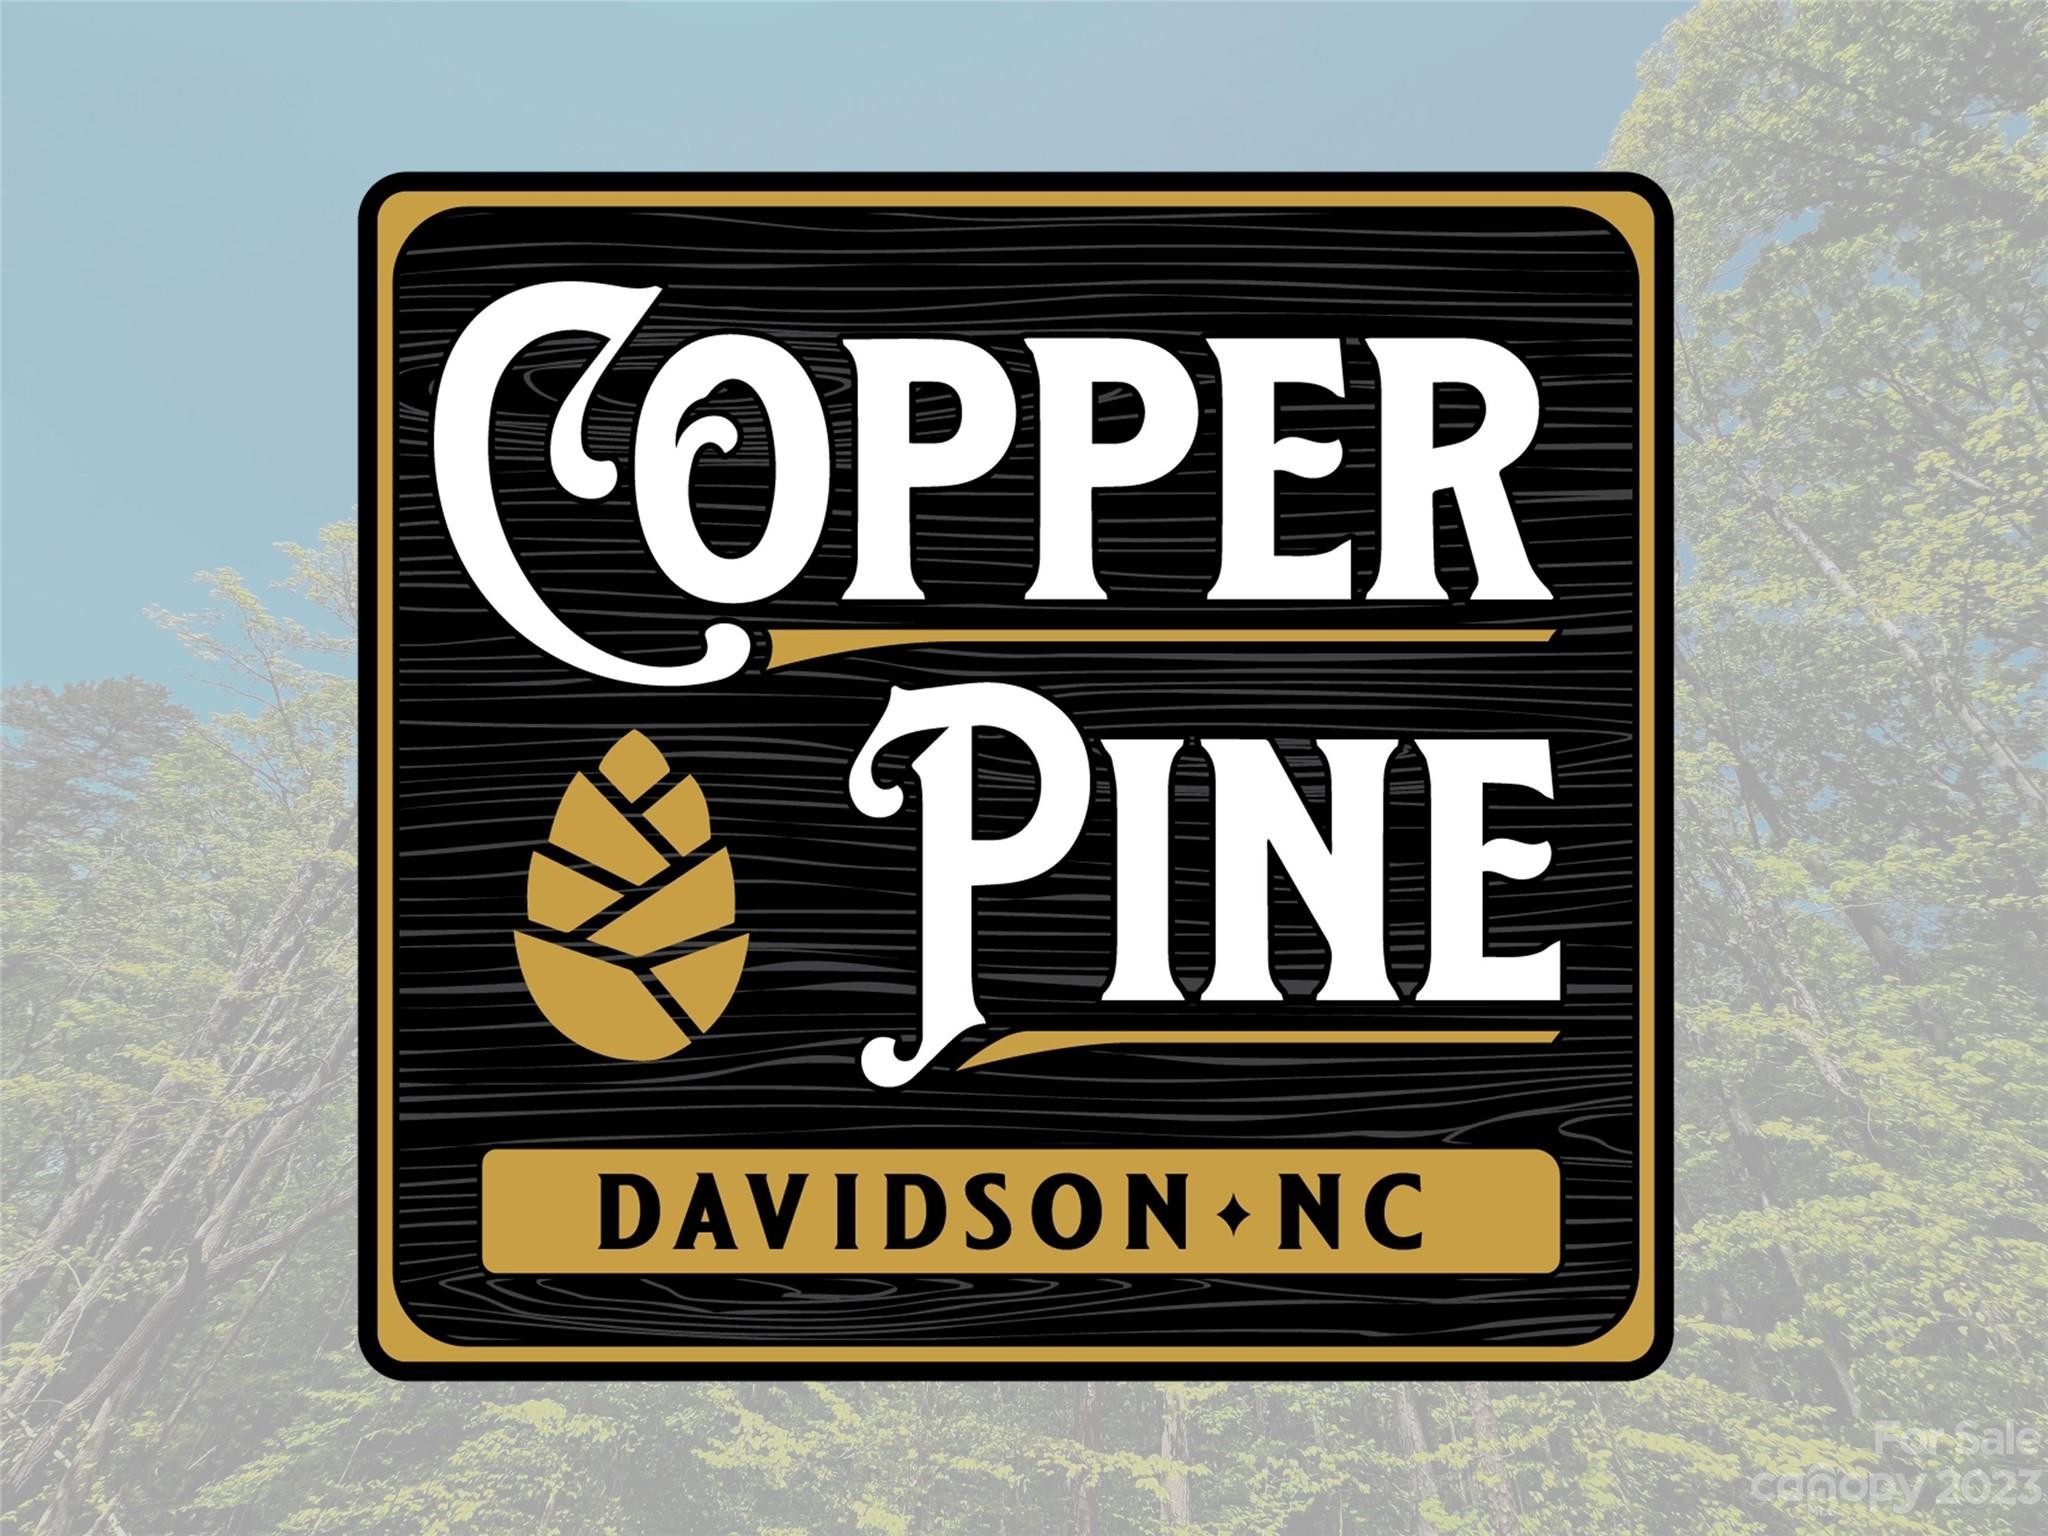 6. 138 Copper Pine Lane